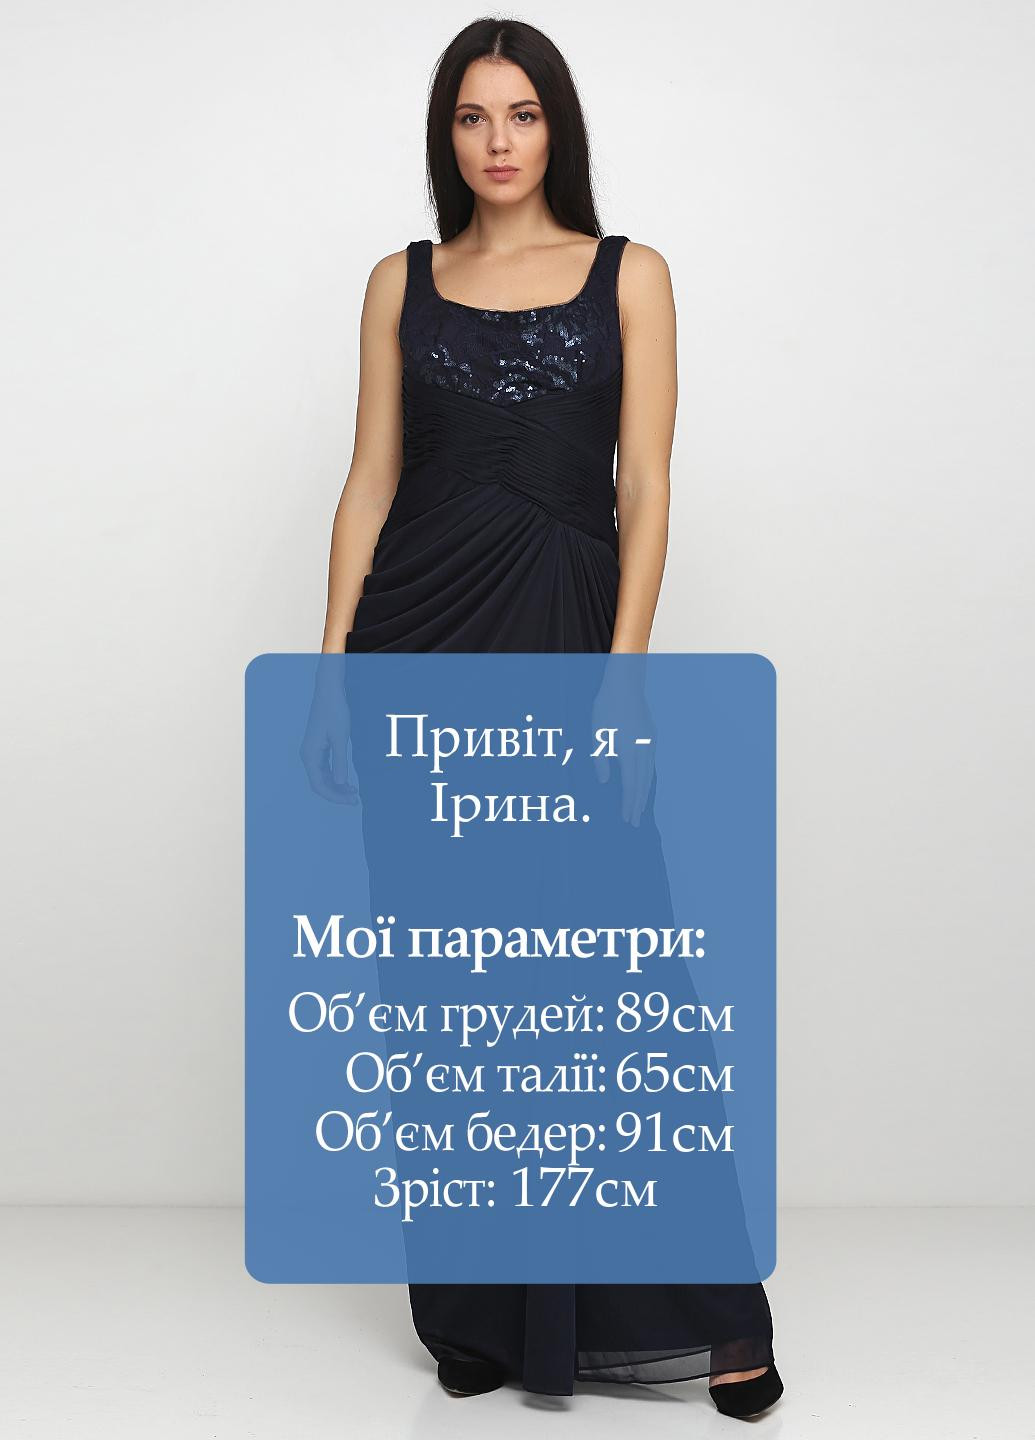 Темно-синее вечернее платье в греческом стиле Adrianna Papell однотонное